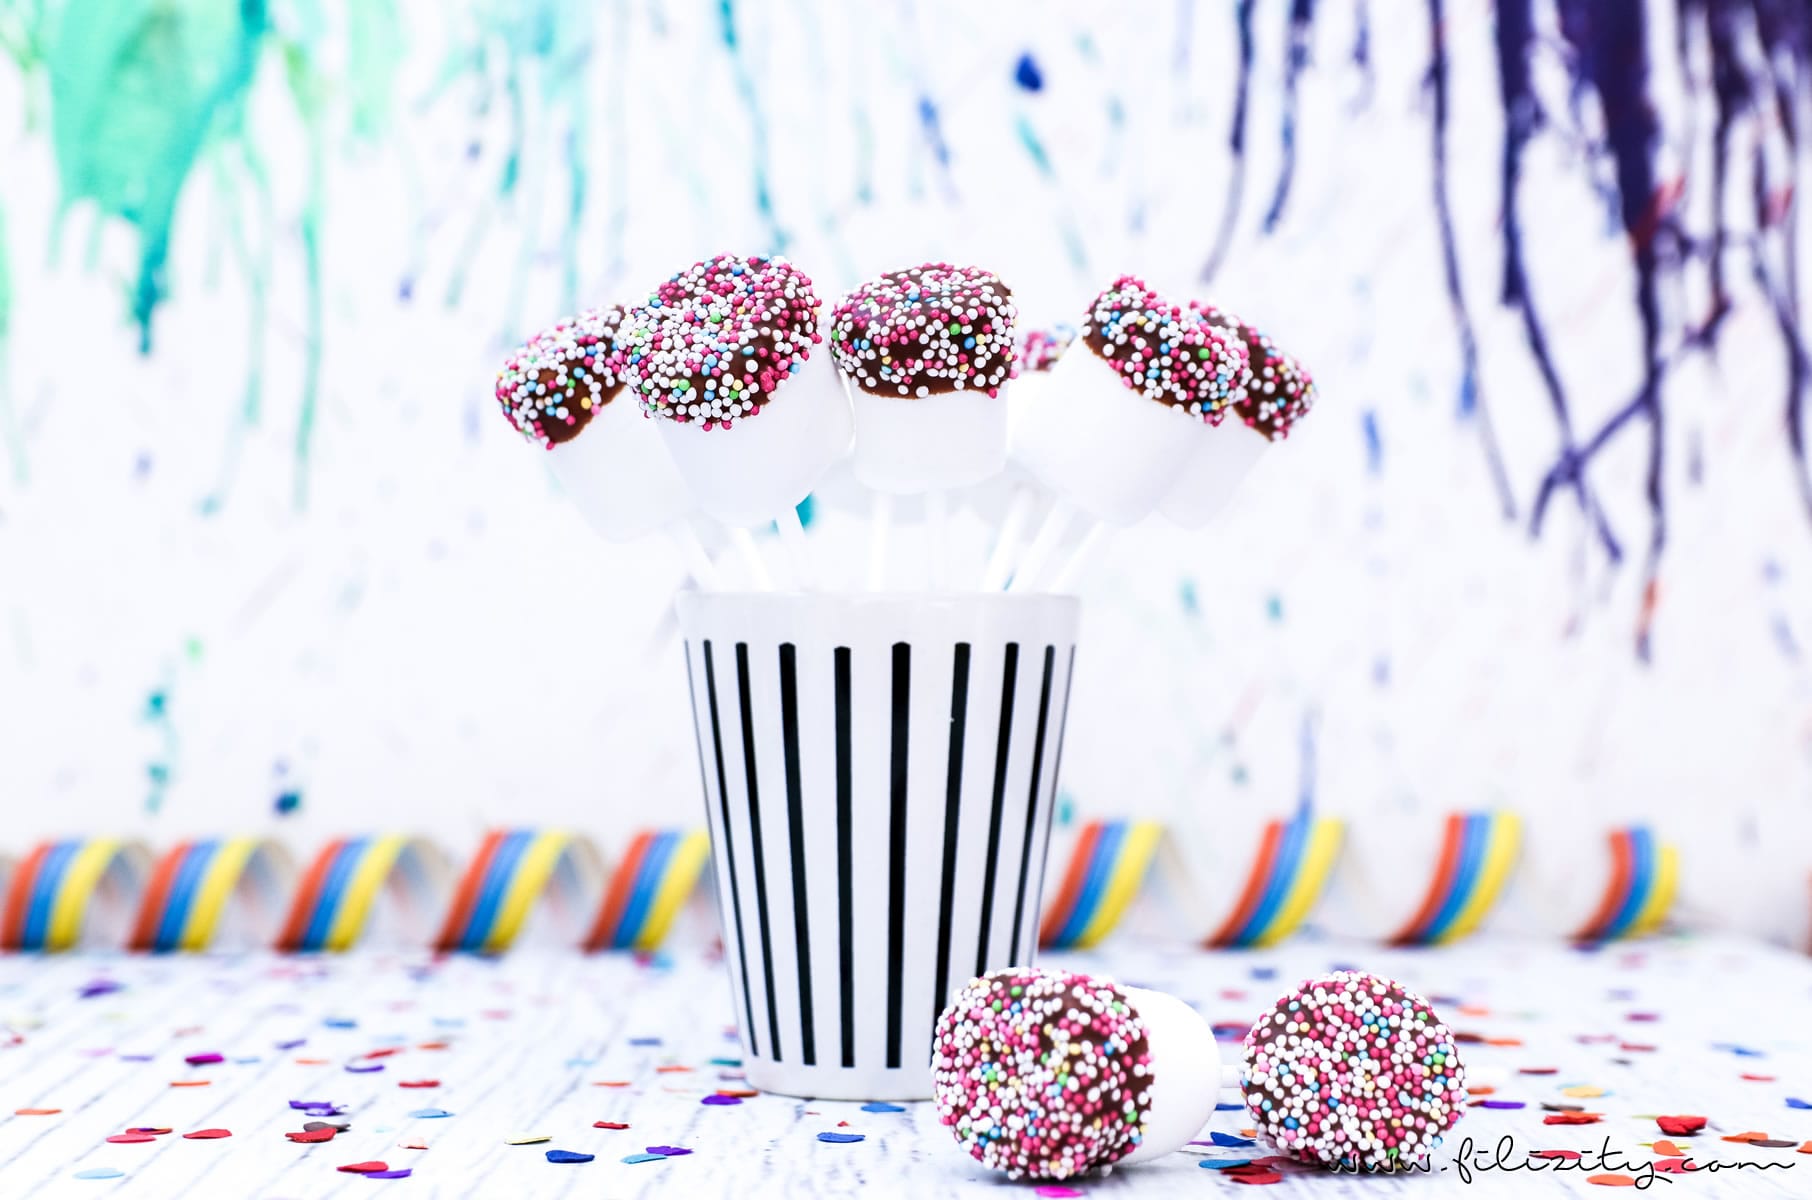 Schnelles Karnevals-Rezept für Marshmallow-Schoko-Pops mit buntem Zucker-Konfetti | Auch perfekt als Party-Food für Kinder-Geburtstage | Filizity.com | Food-Blog aus dem Rheinland #fasching #karneval #cakepops